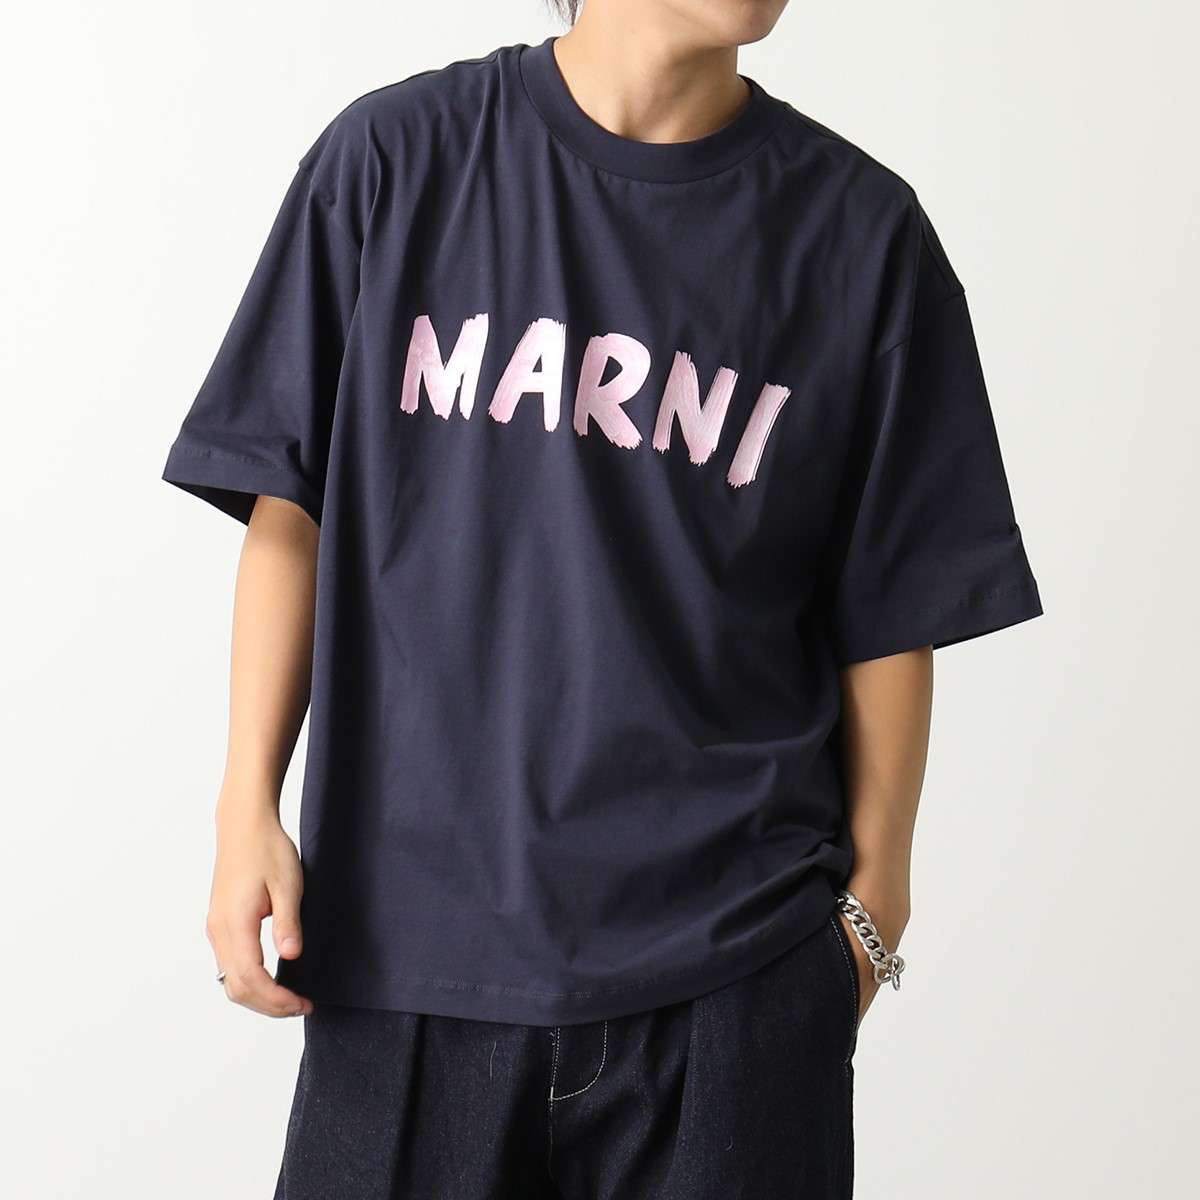 MARNI マルニ Tシャツ THJET49EPH USCS11 メンズ マルニレタリングプリント ミドルスリーブ クルーネック オーバーサイズ 半袖  カットソー ロゴT カラー9色